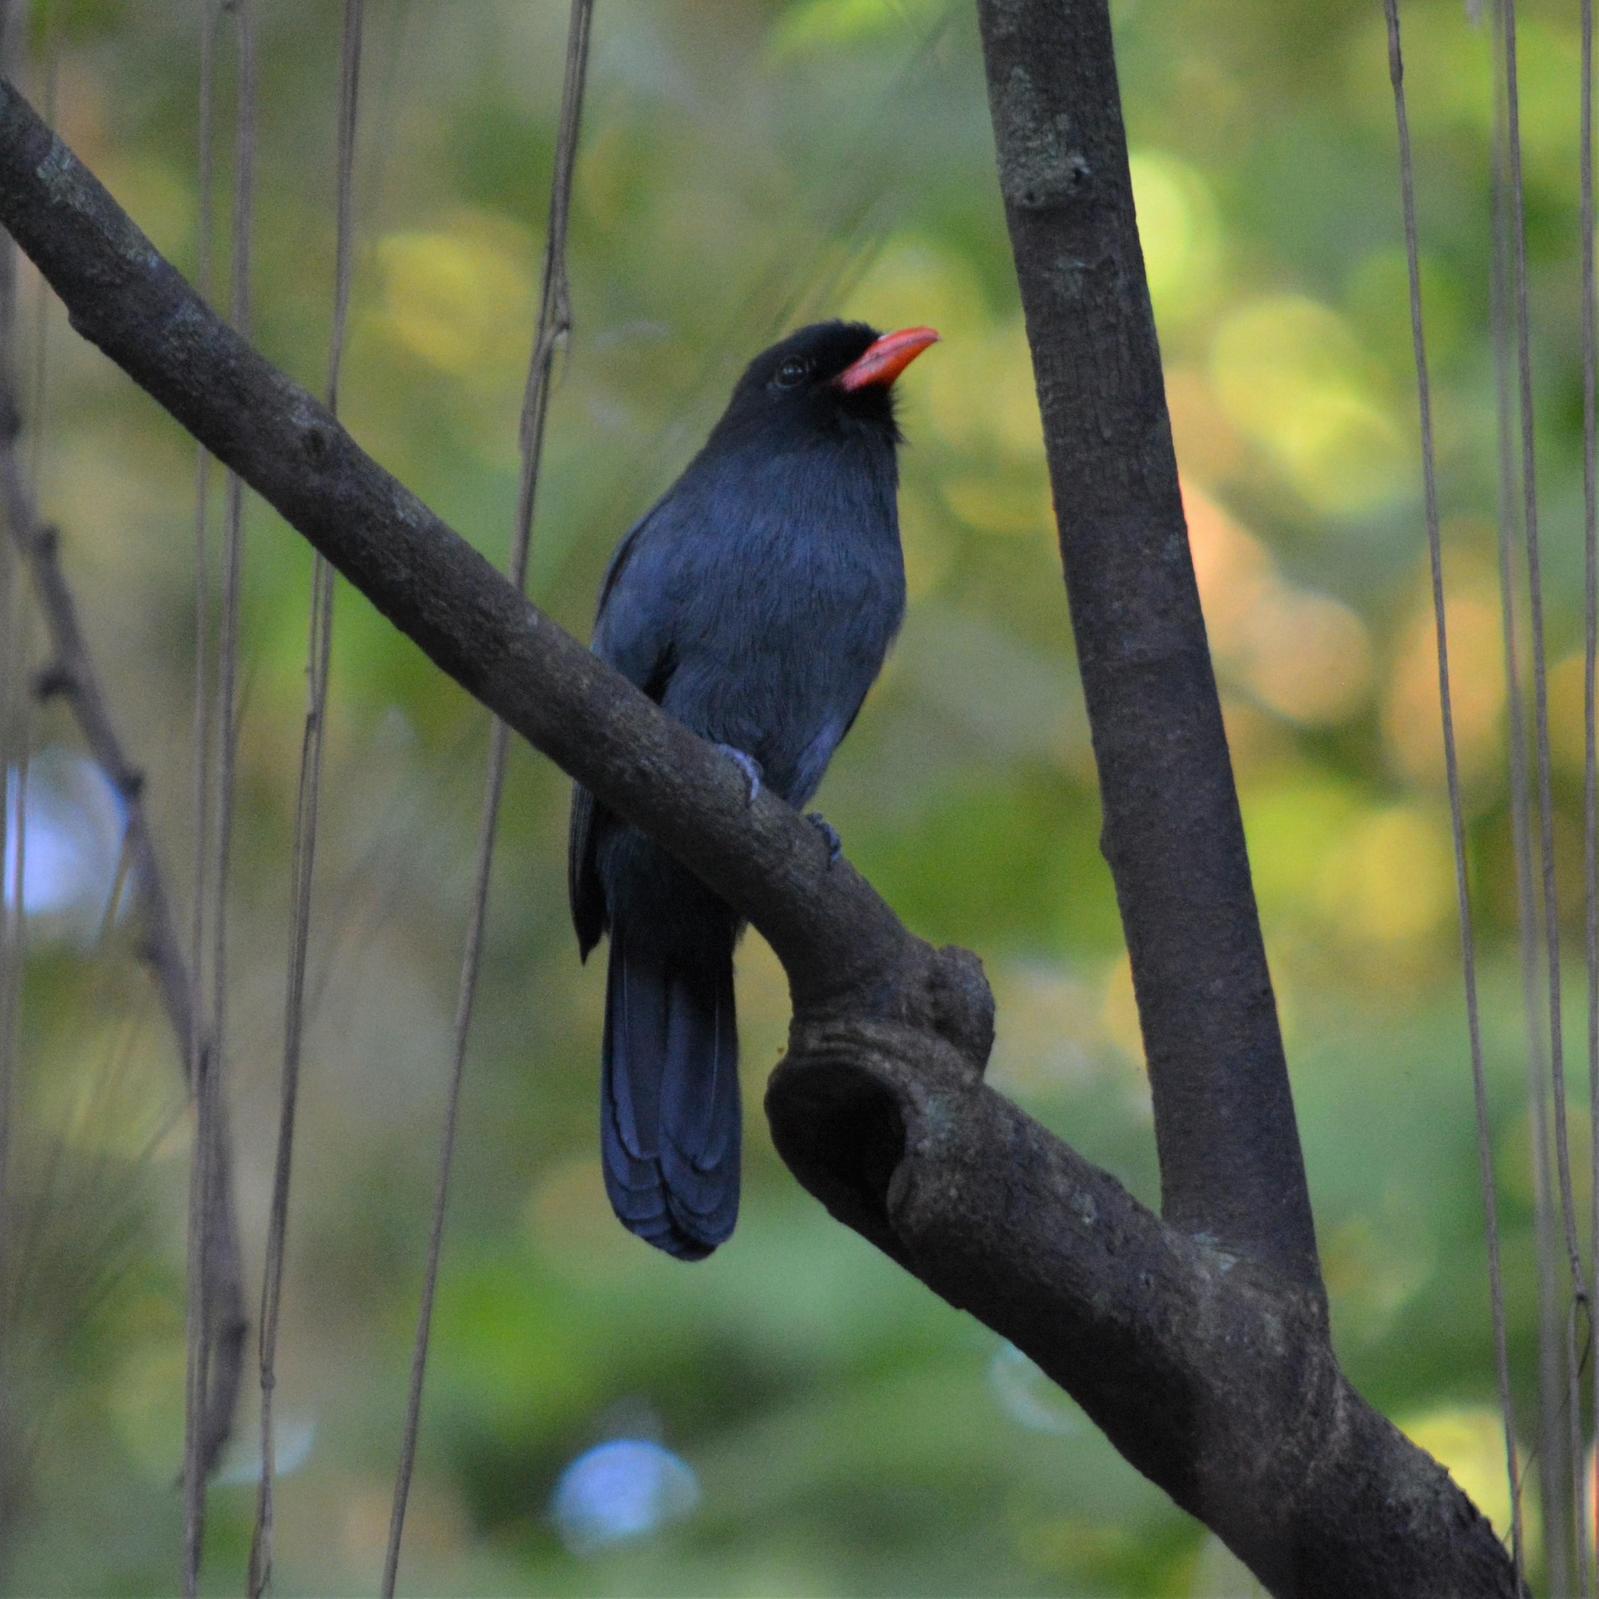 Black-fronted Nunbird Photo by Eddie Moonen